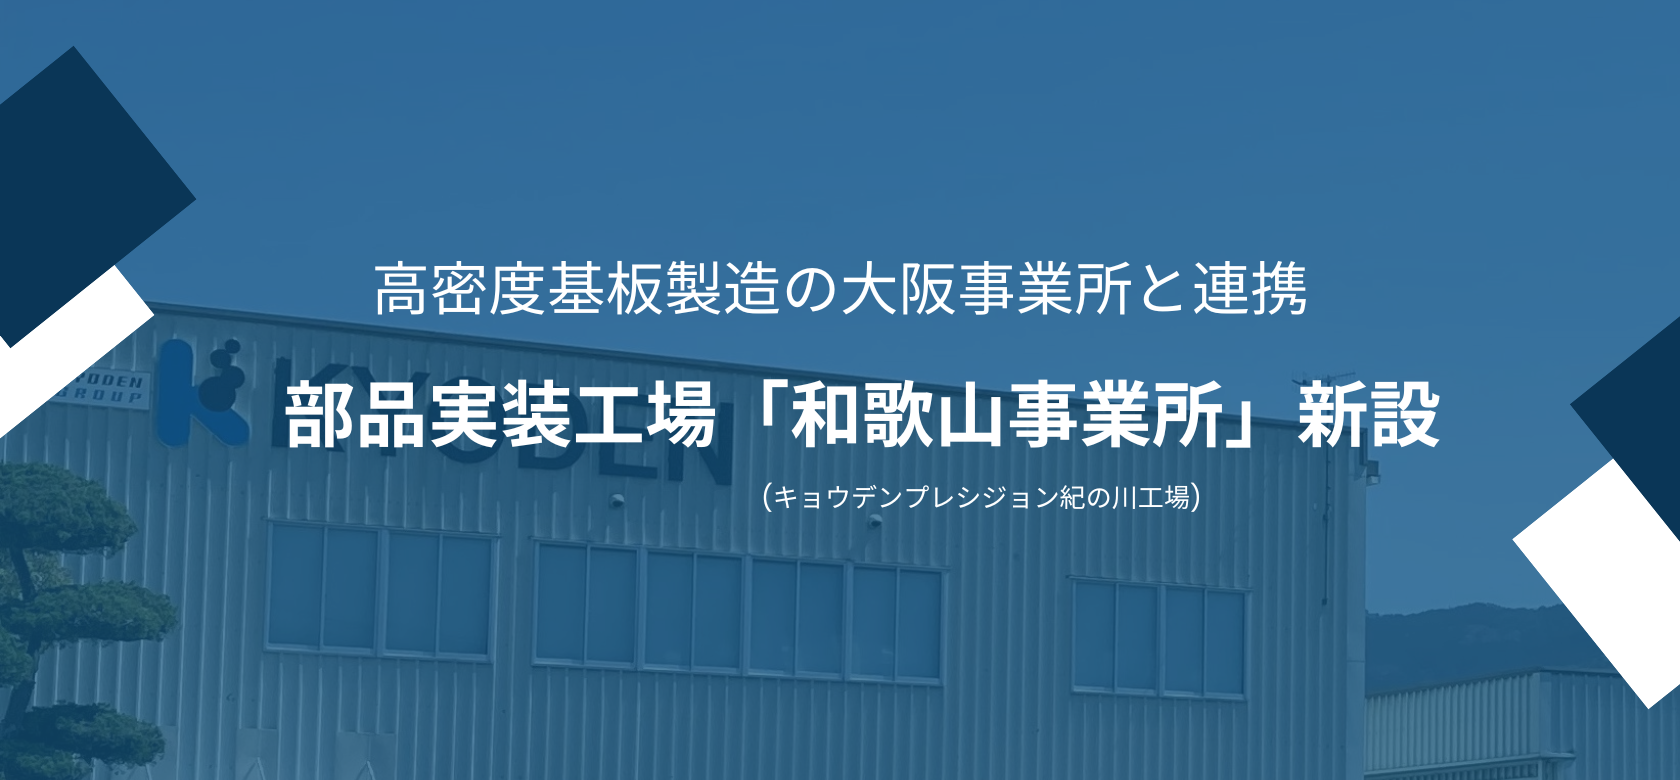 部品実装工場「和歌山事業所(キョウデンプレシジョン紀の川工場)」を新設！